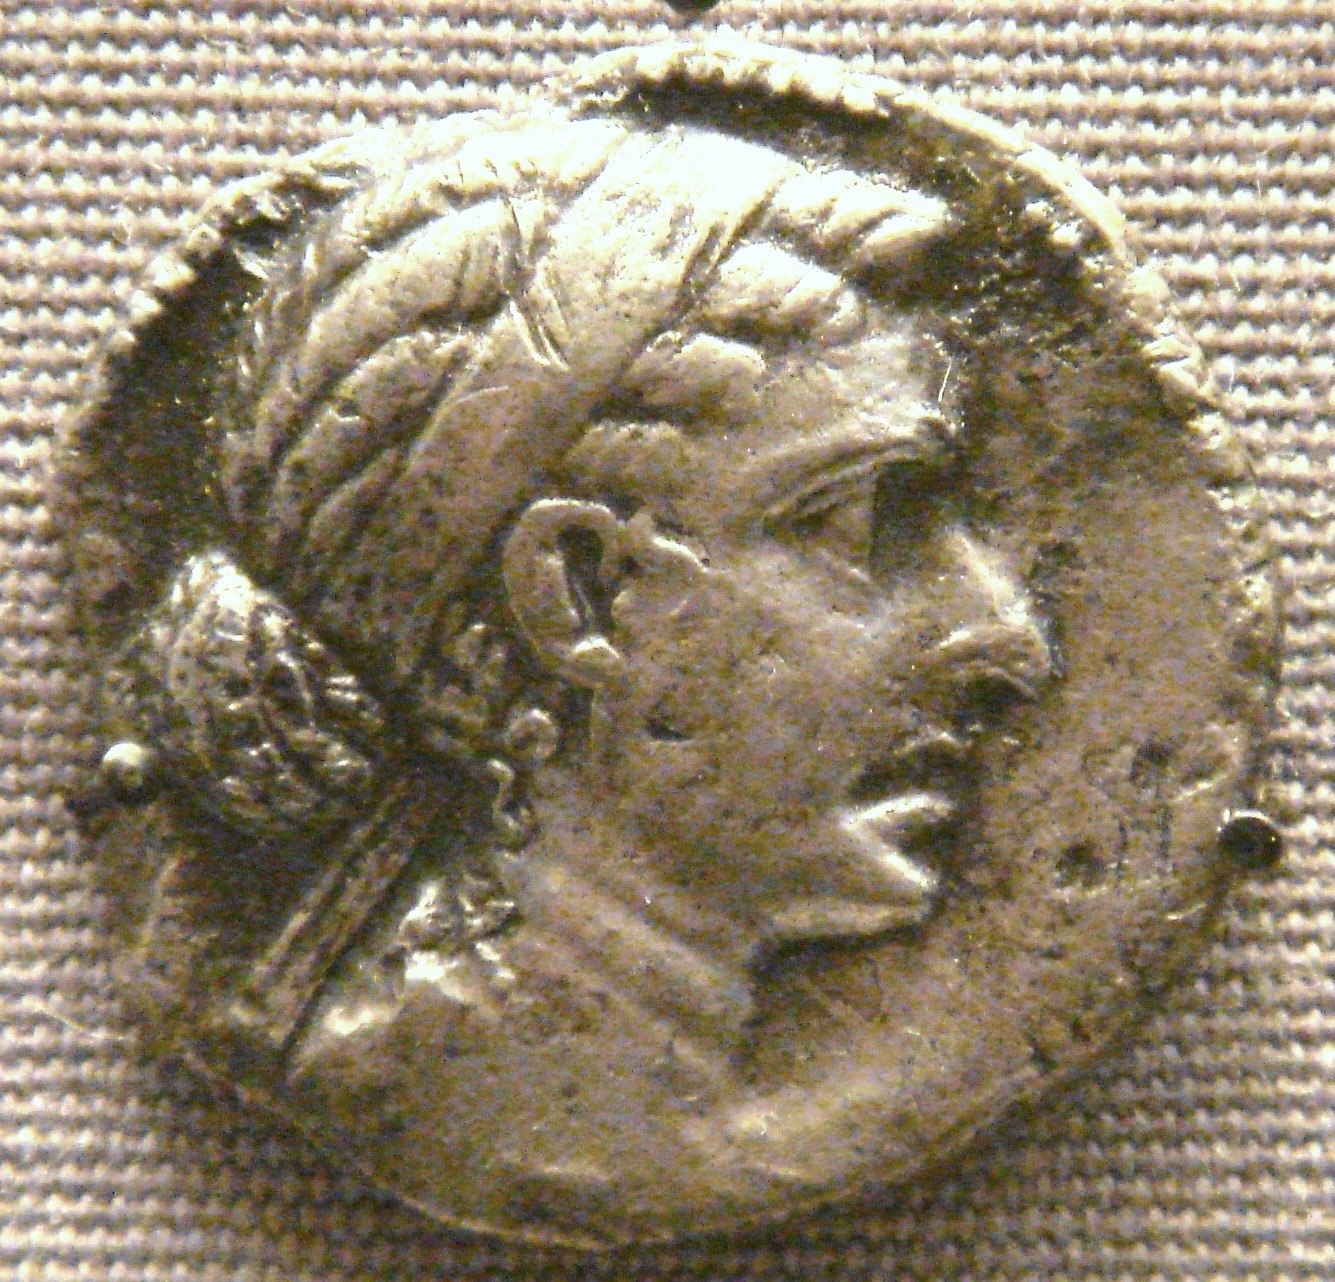 Descobrindo O Egito Antigo - Cleópatra e Júlio César ambos tiveram um filho  chamado Ptolomeu XV Cesarião, sendo este o último faraó da dinastia  Ptolemaica embora César jamais tenha reconhecido sua paternidade